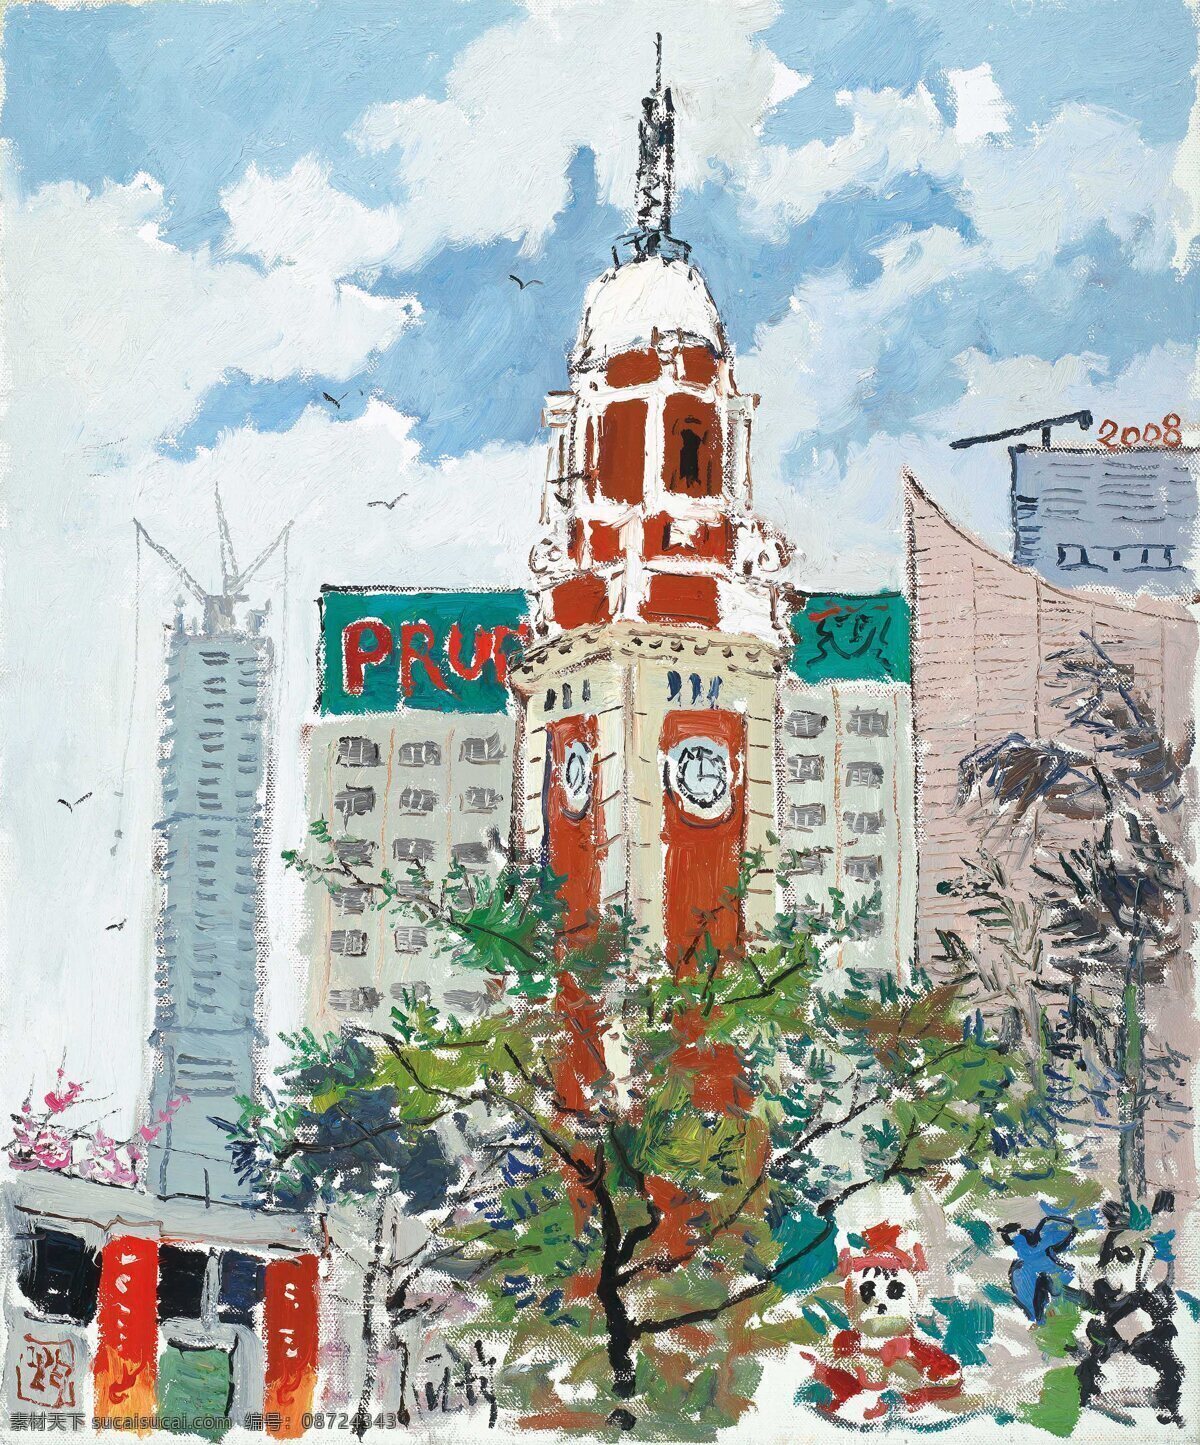 香港钟楼 庞俊作品 城市风光 五光十色 高楼林立 现代油画 油画 文化艺术 绘画书法